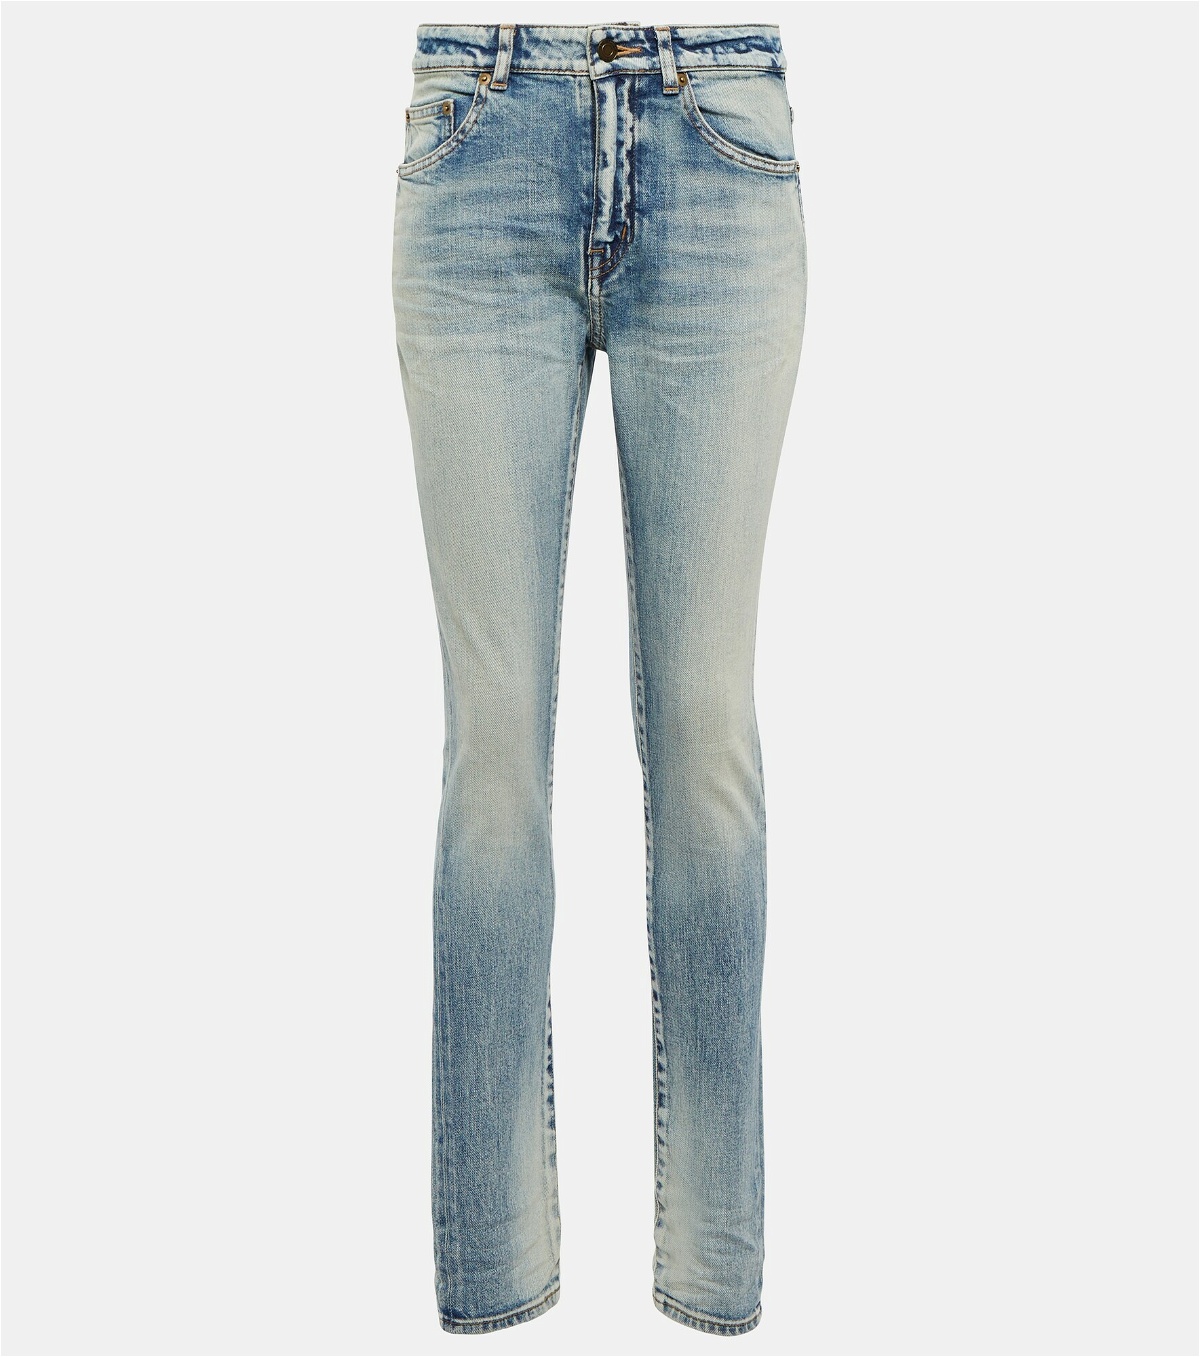 Saint Laurent - High-rise skinny jeans Saint Laurent